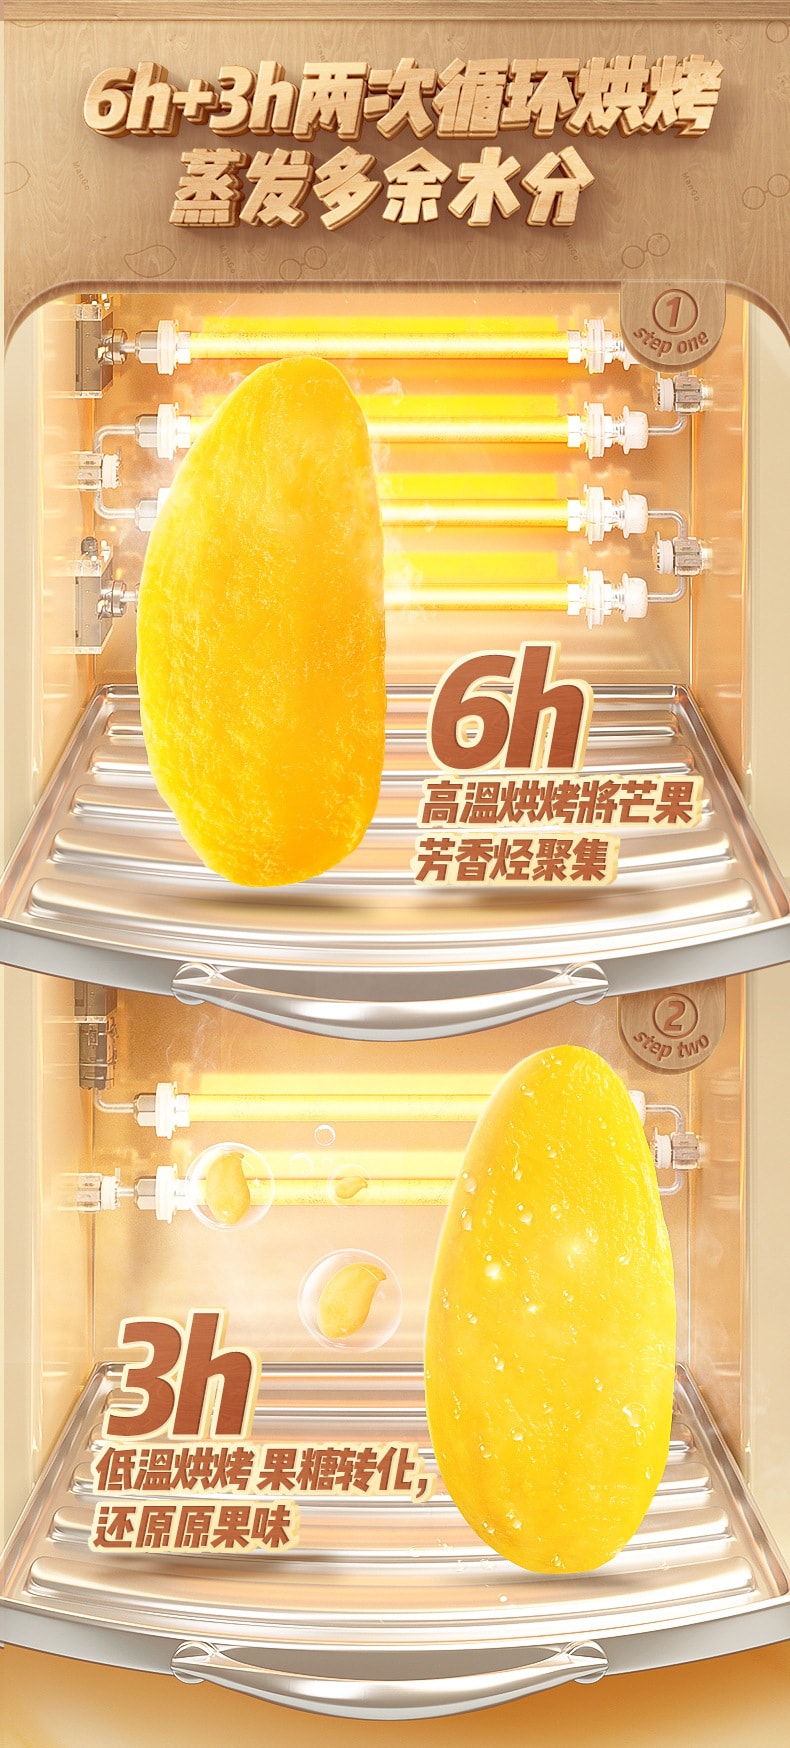 【中国直邮】三只松鼠 芒果干 泰国风味休闲食品蜜饯水果果脯零食 60g/袋